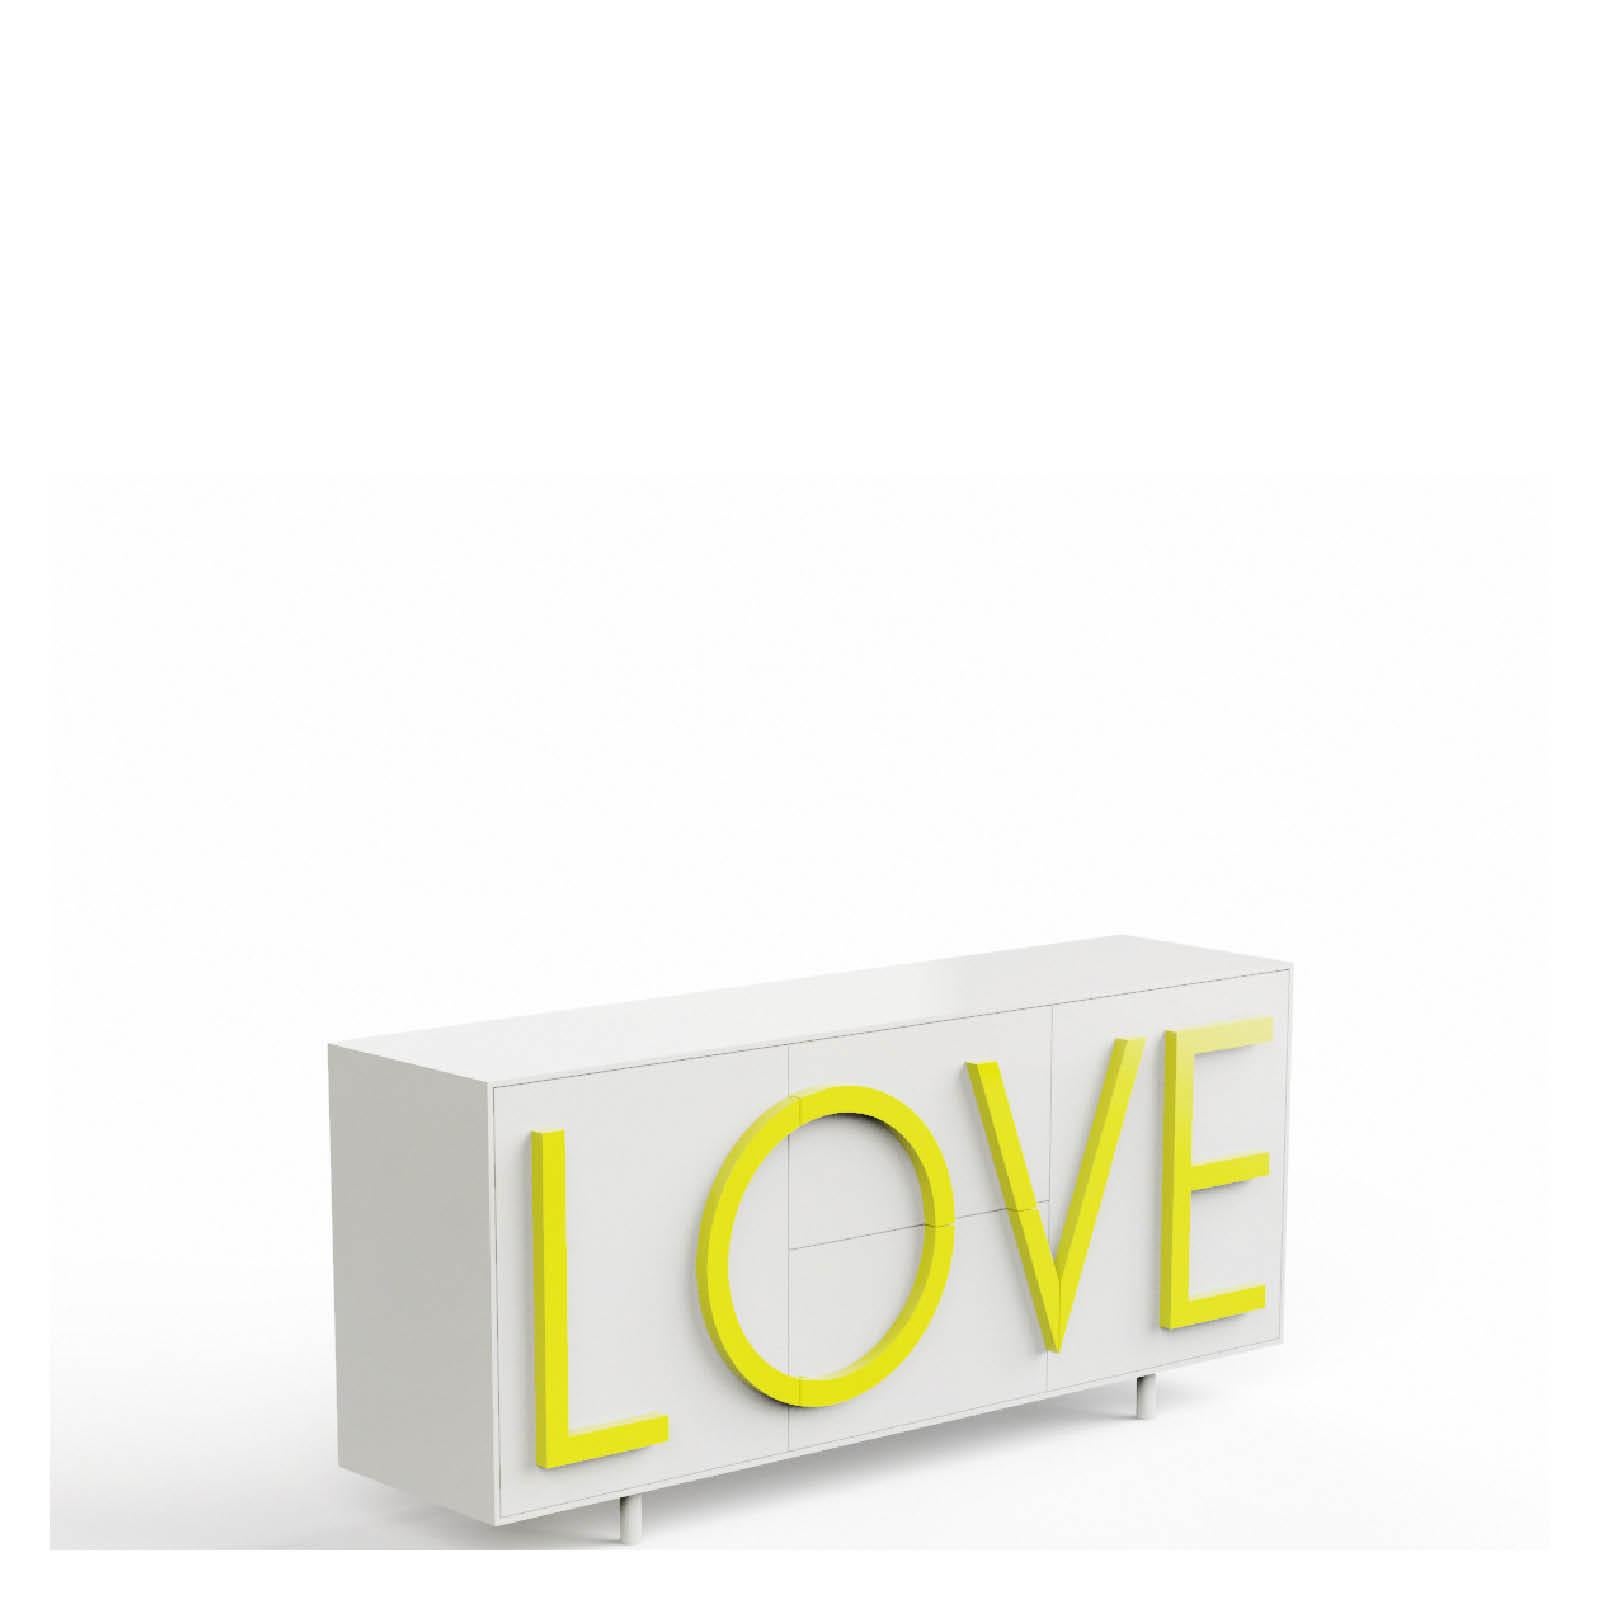 LOVE  cabinet  by Fabio Novembre for Driade For Sale 4